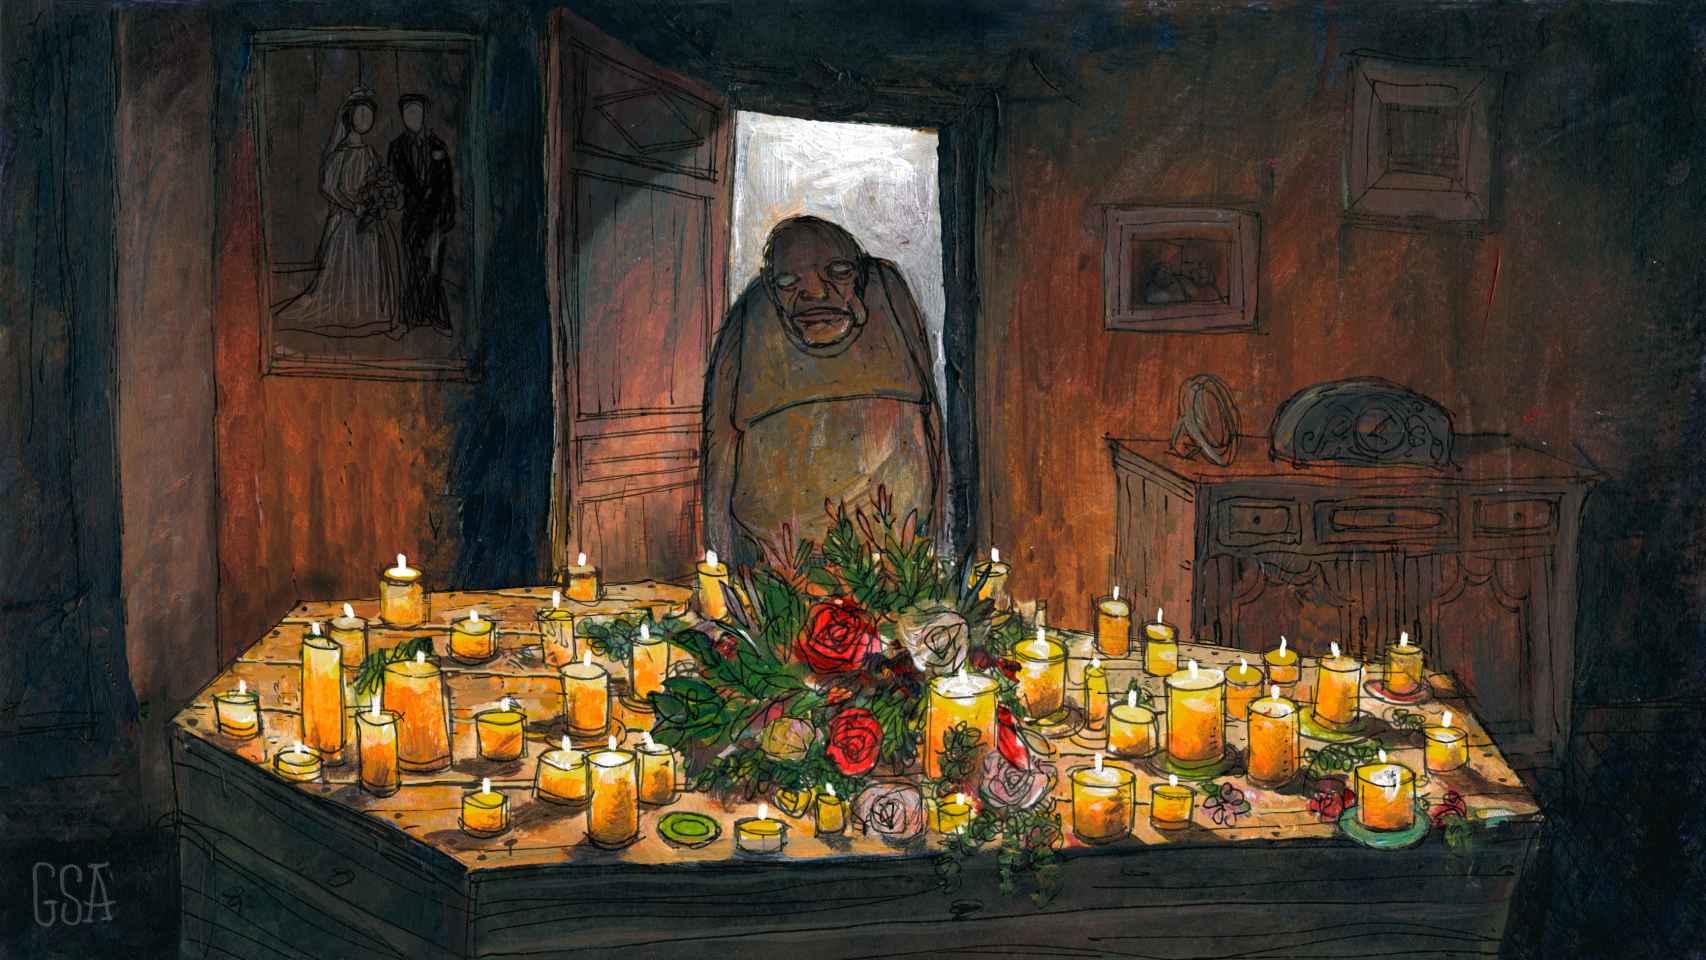 Enrique fabricó un féretro con palés de madera y puso velas, flores y un altar